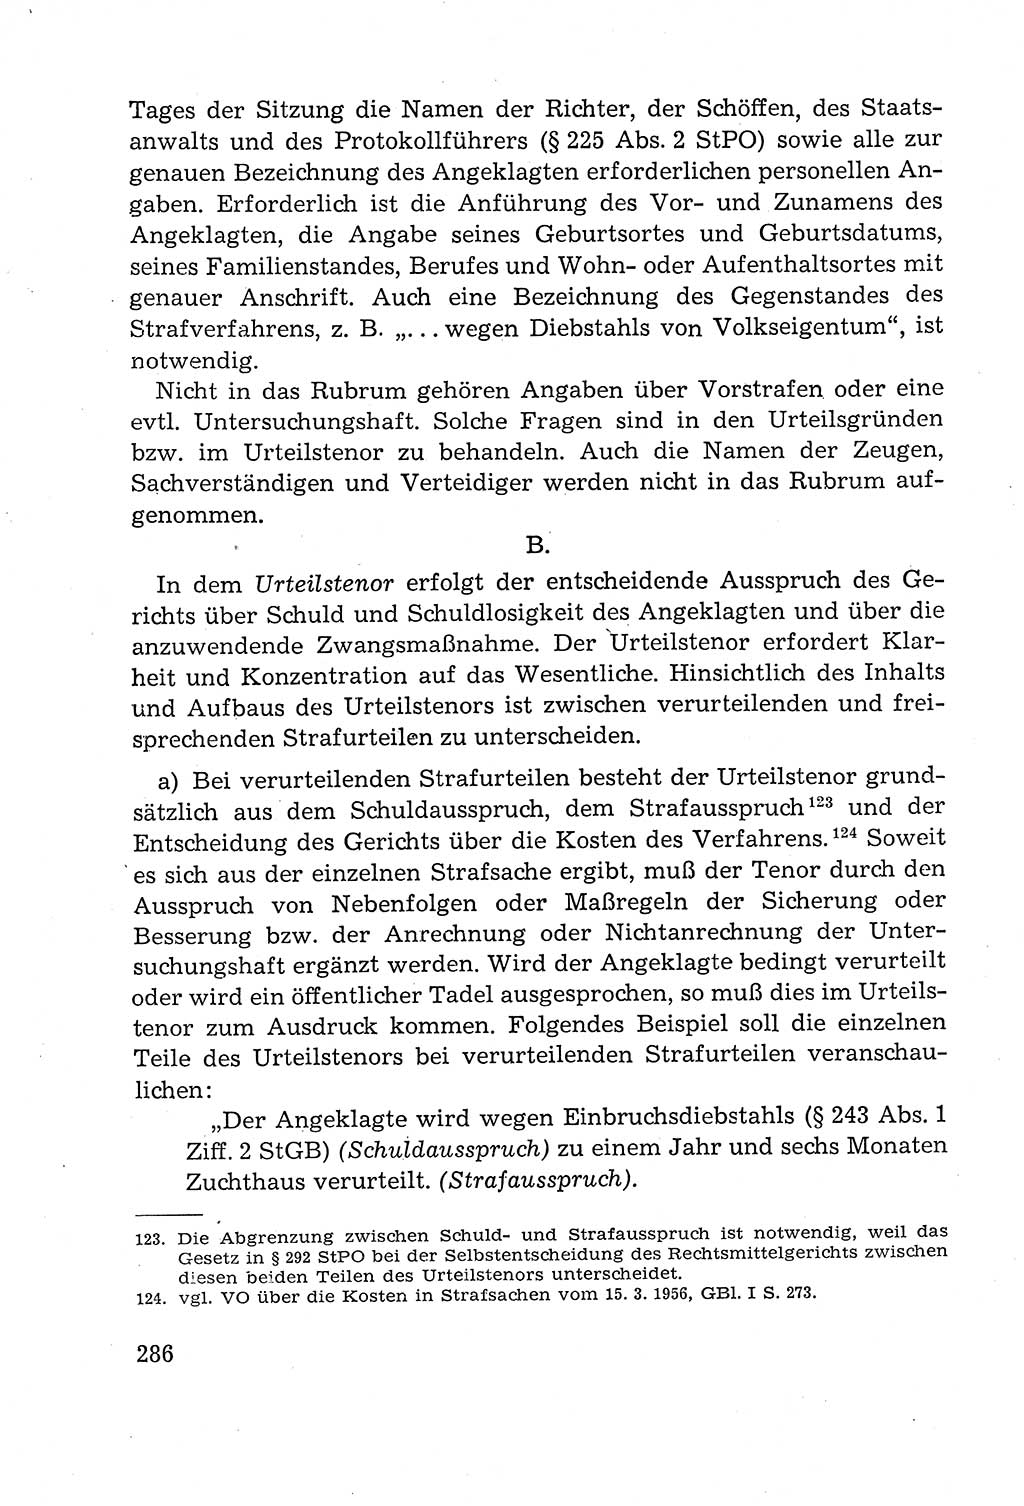 Leitfaden des Strafprozeßrechts der Deutschen Demokratischen Republik (DDR) 1959, Seite 286 (LF StPR DDR 1959, S. 286)